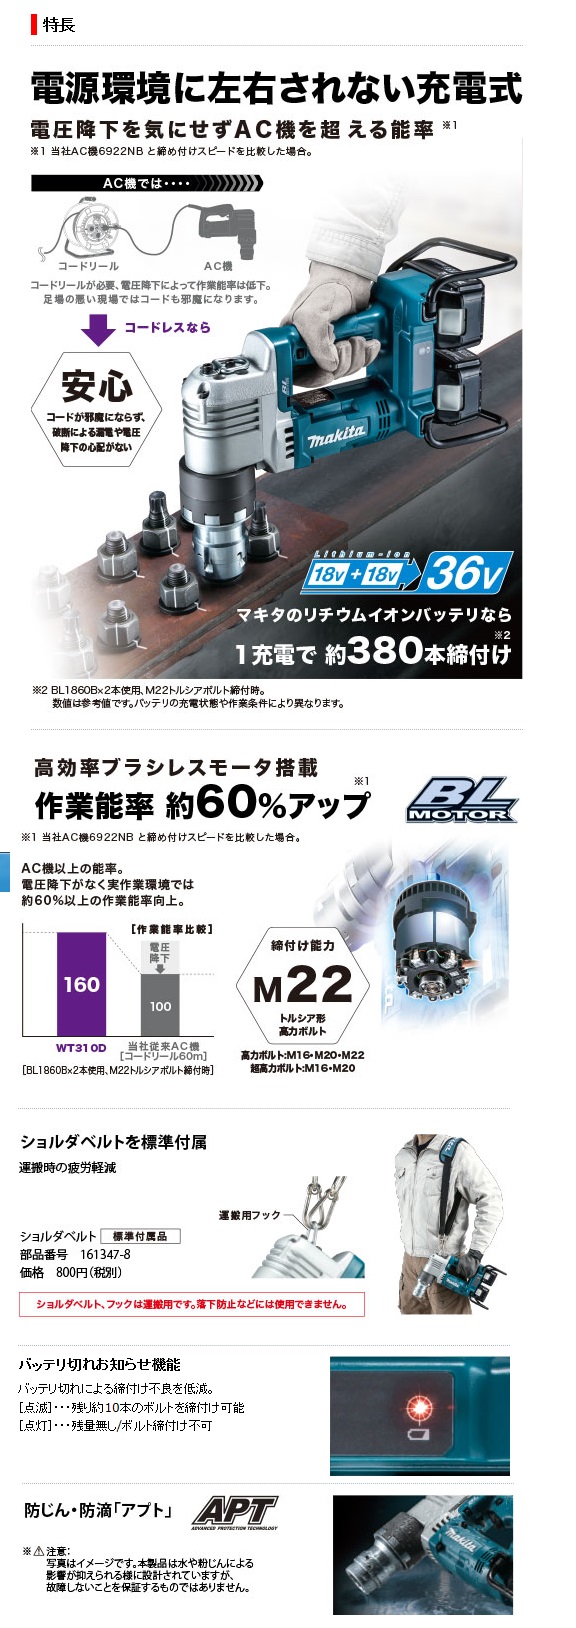 マキタ 充電式シャーレンチ WT310DPG2(6.0Aｈ) / 建築金物通販【秋本 ...